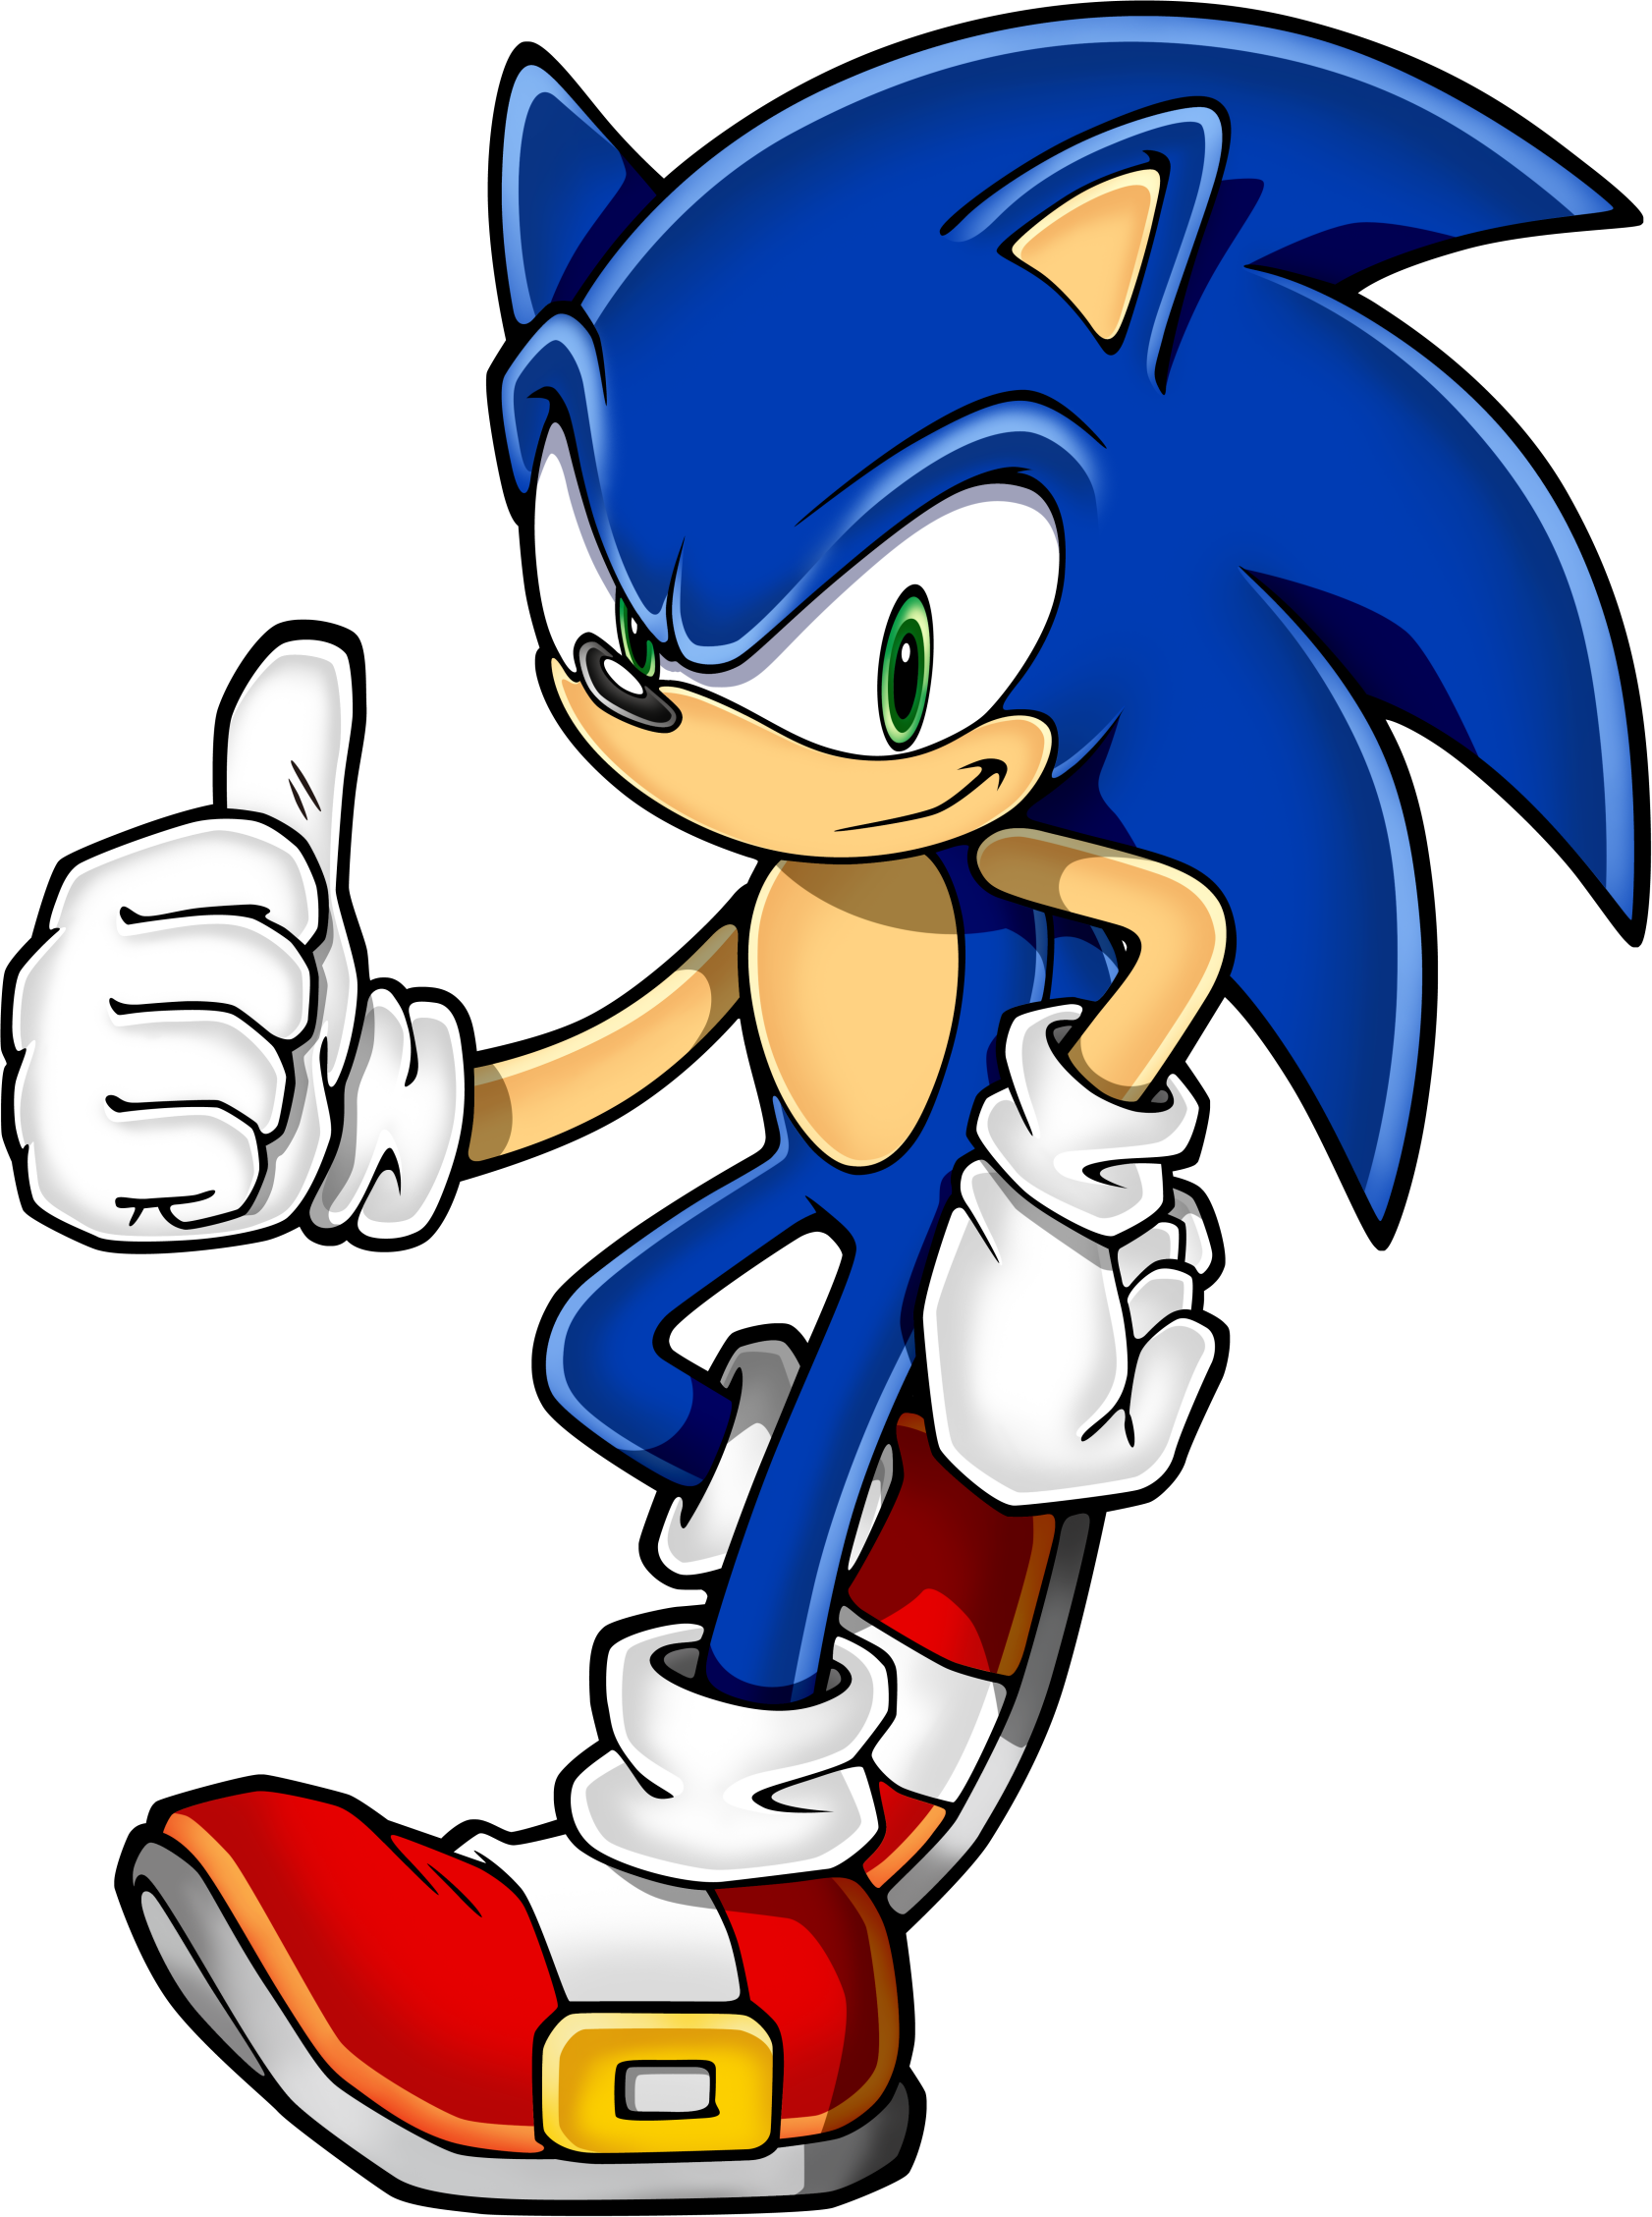 Sonic The Hedgehog (Genesis):